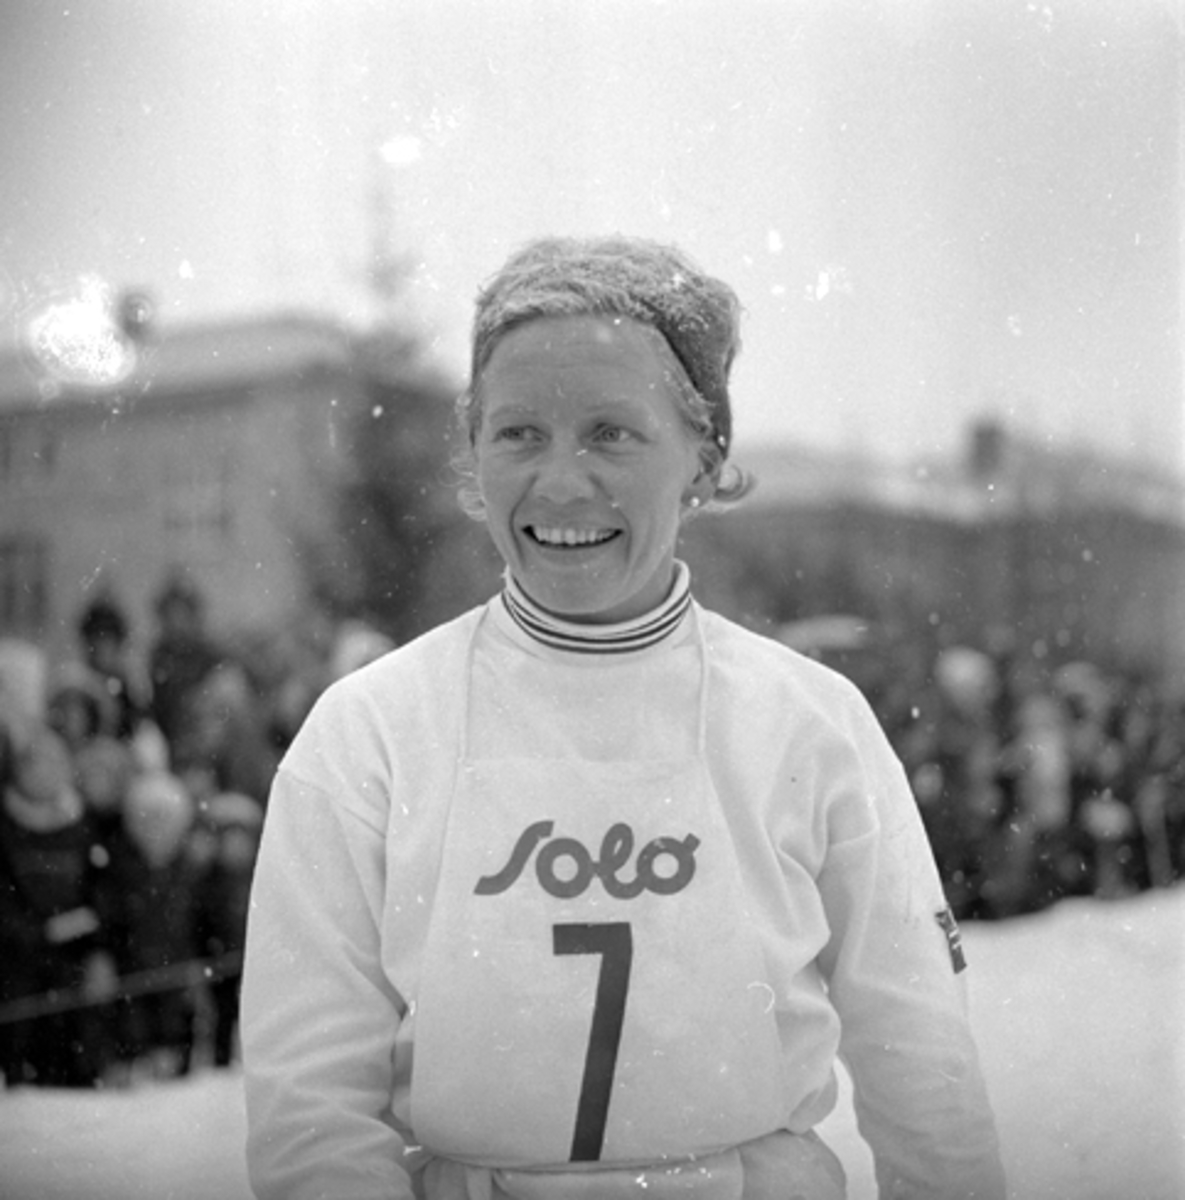 Berit Mørdre, langrenn f. 1940 d. 2016 er en tidligere norsk langrennsløper. Berit Mørdre (født 16. april 1940 i Nes i Akershus, død 23. august 2016[1]) var en norsk langrennsløper. Hun het Berit Mørdre Lammedal i noen år fra 1969. Hun representerte Romerikslaget, og dominerte norsk kvinnelangrenn store deler av 1960- og 1970-årene.

Hun deltok i to vinter-OL og vant gull, sølv og bronse. Sammen med Inger Aufles og Babben Enger Damon vant hun 3 × 5 km stafett i OL i Grenoble, Norges første OL-gull i kvinnelangrenn. I tillegg til VM-sølv på stafett i 1966, den første kvinnelige VM-medaljen i langrenn, tok hun 19 NM-titler, 13 individuelle og seks i stafett. Kilde:Wikipedia.